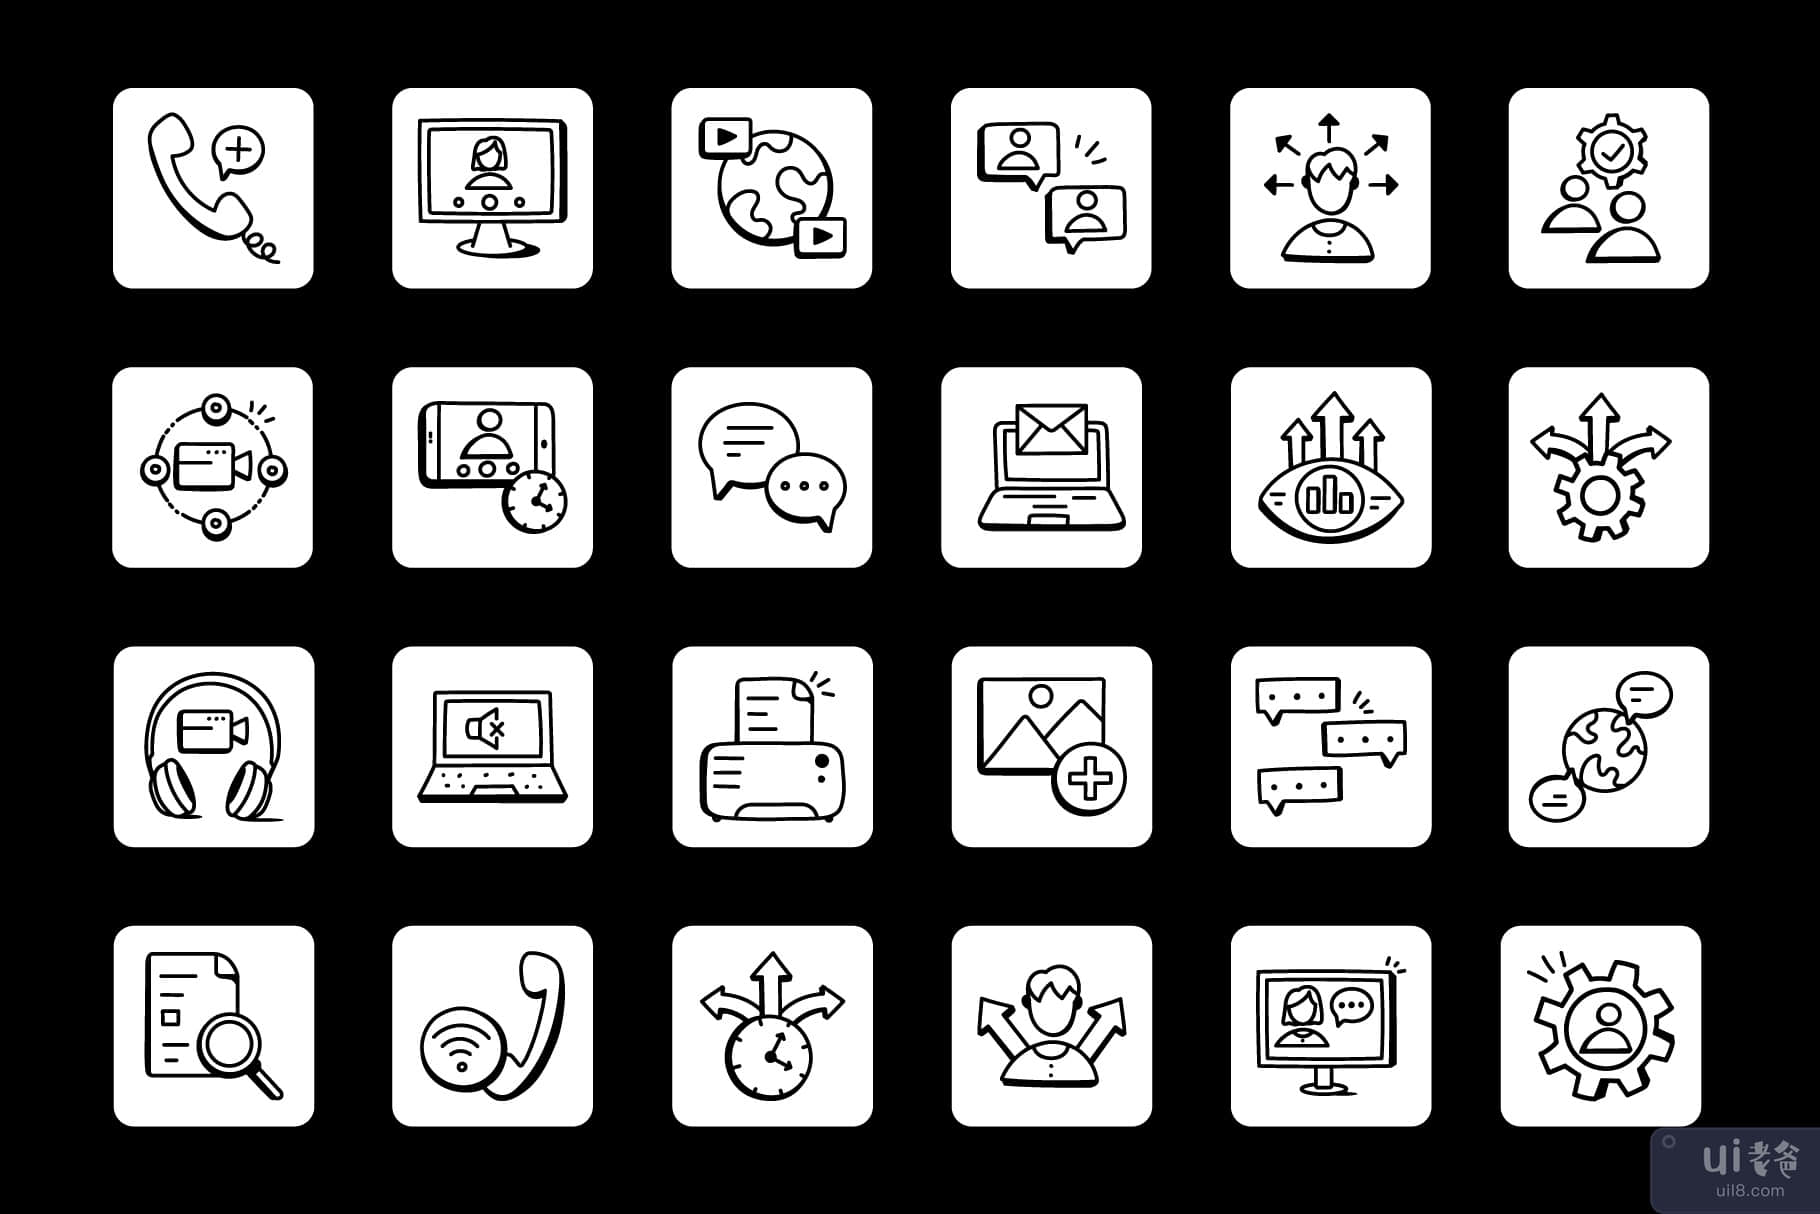 100 涂鸦讨论和会议图标(100 Doodle Discussion and Meeting Icons)插图3